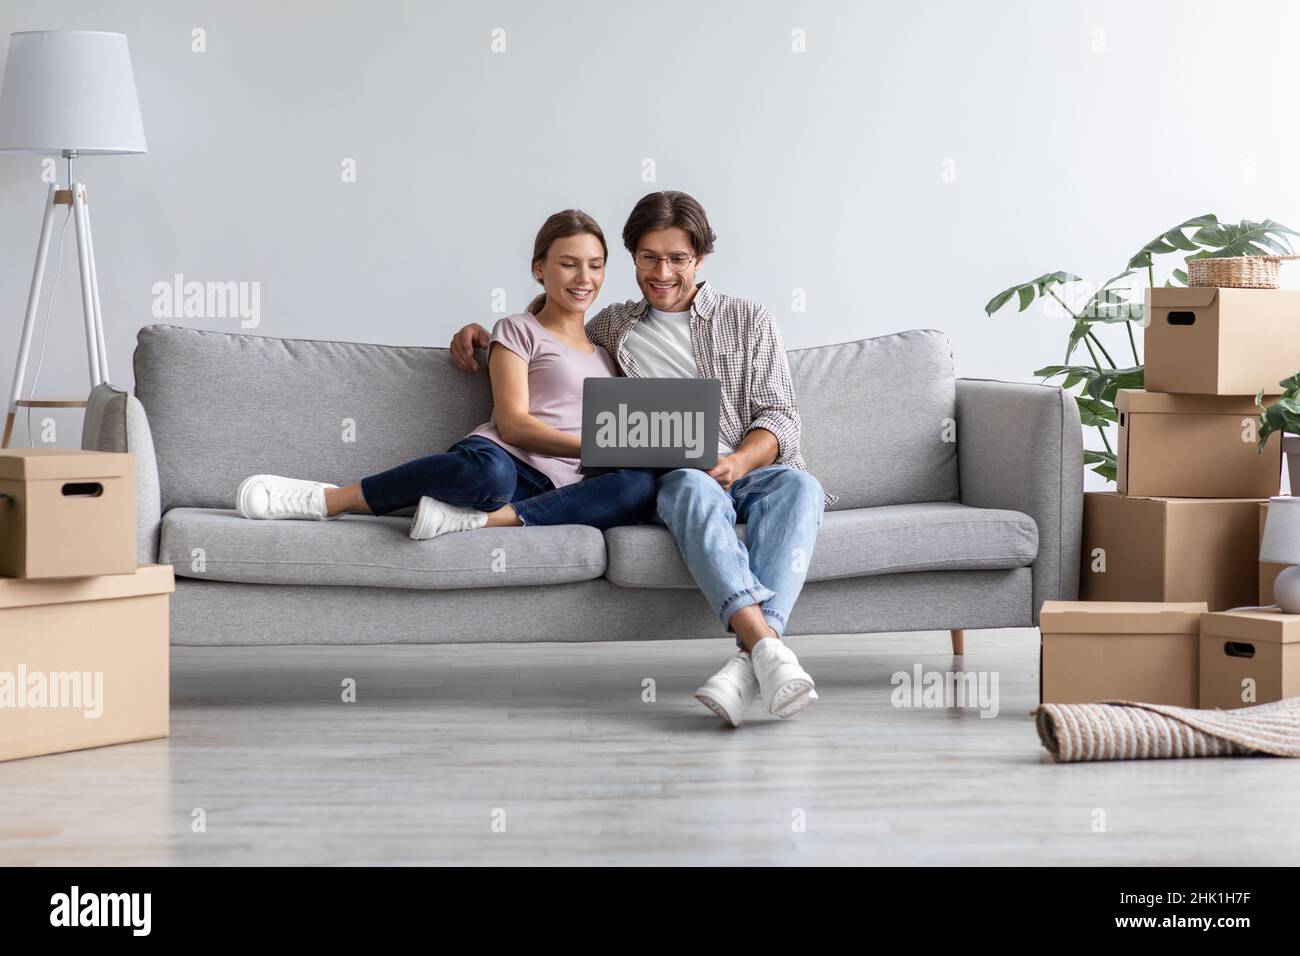 Beschäftigt glücklich europäischen jungen Mann zeigen Computer für die Frau auf dem Sofa im Wohnzimmer Interieur Stockfoto